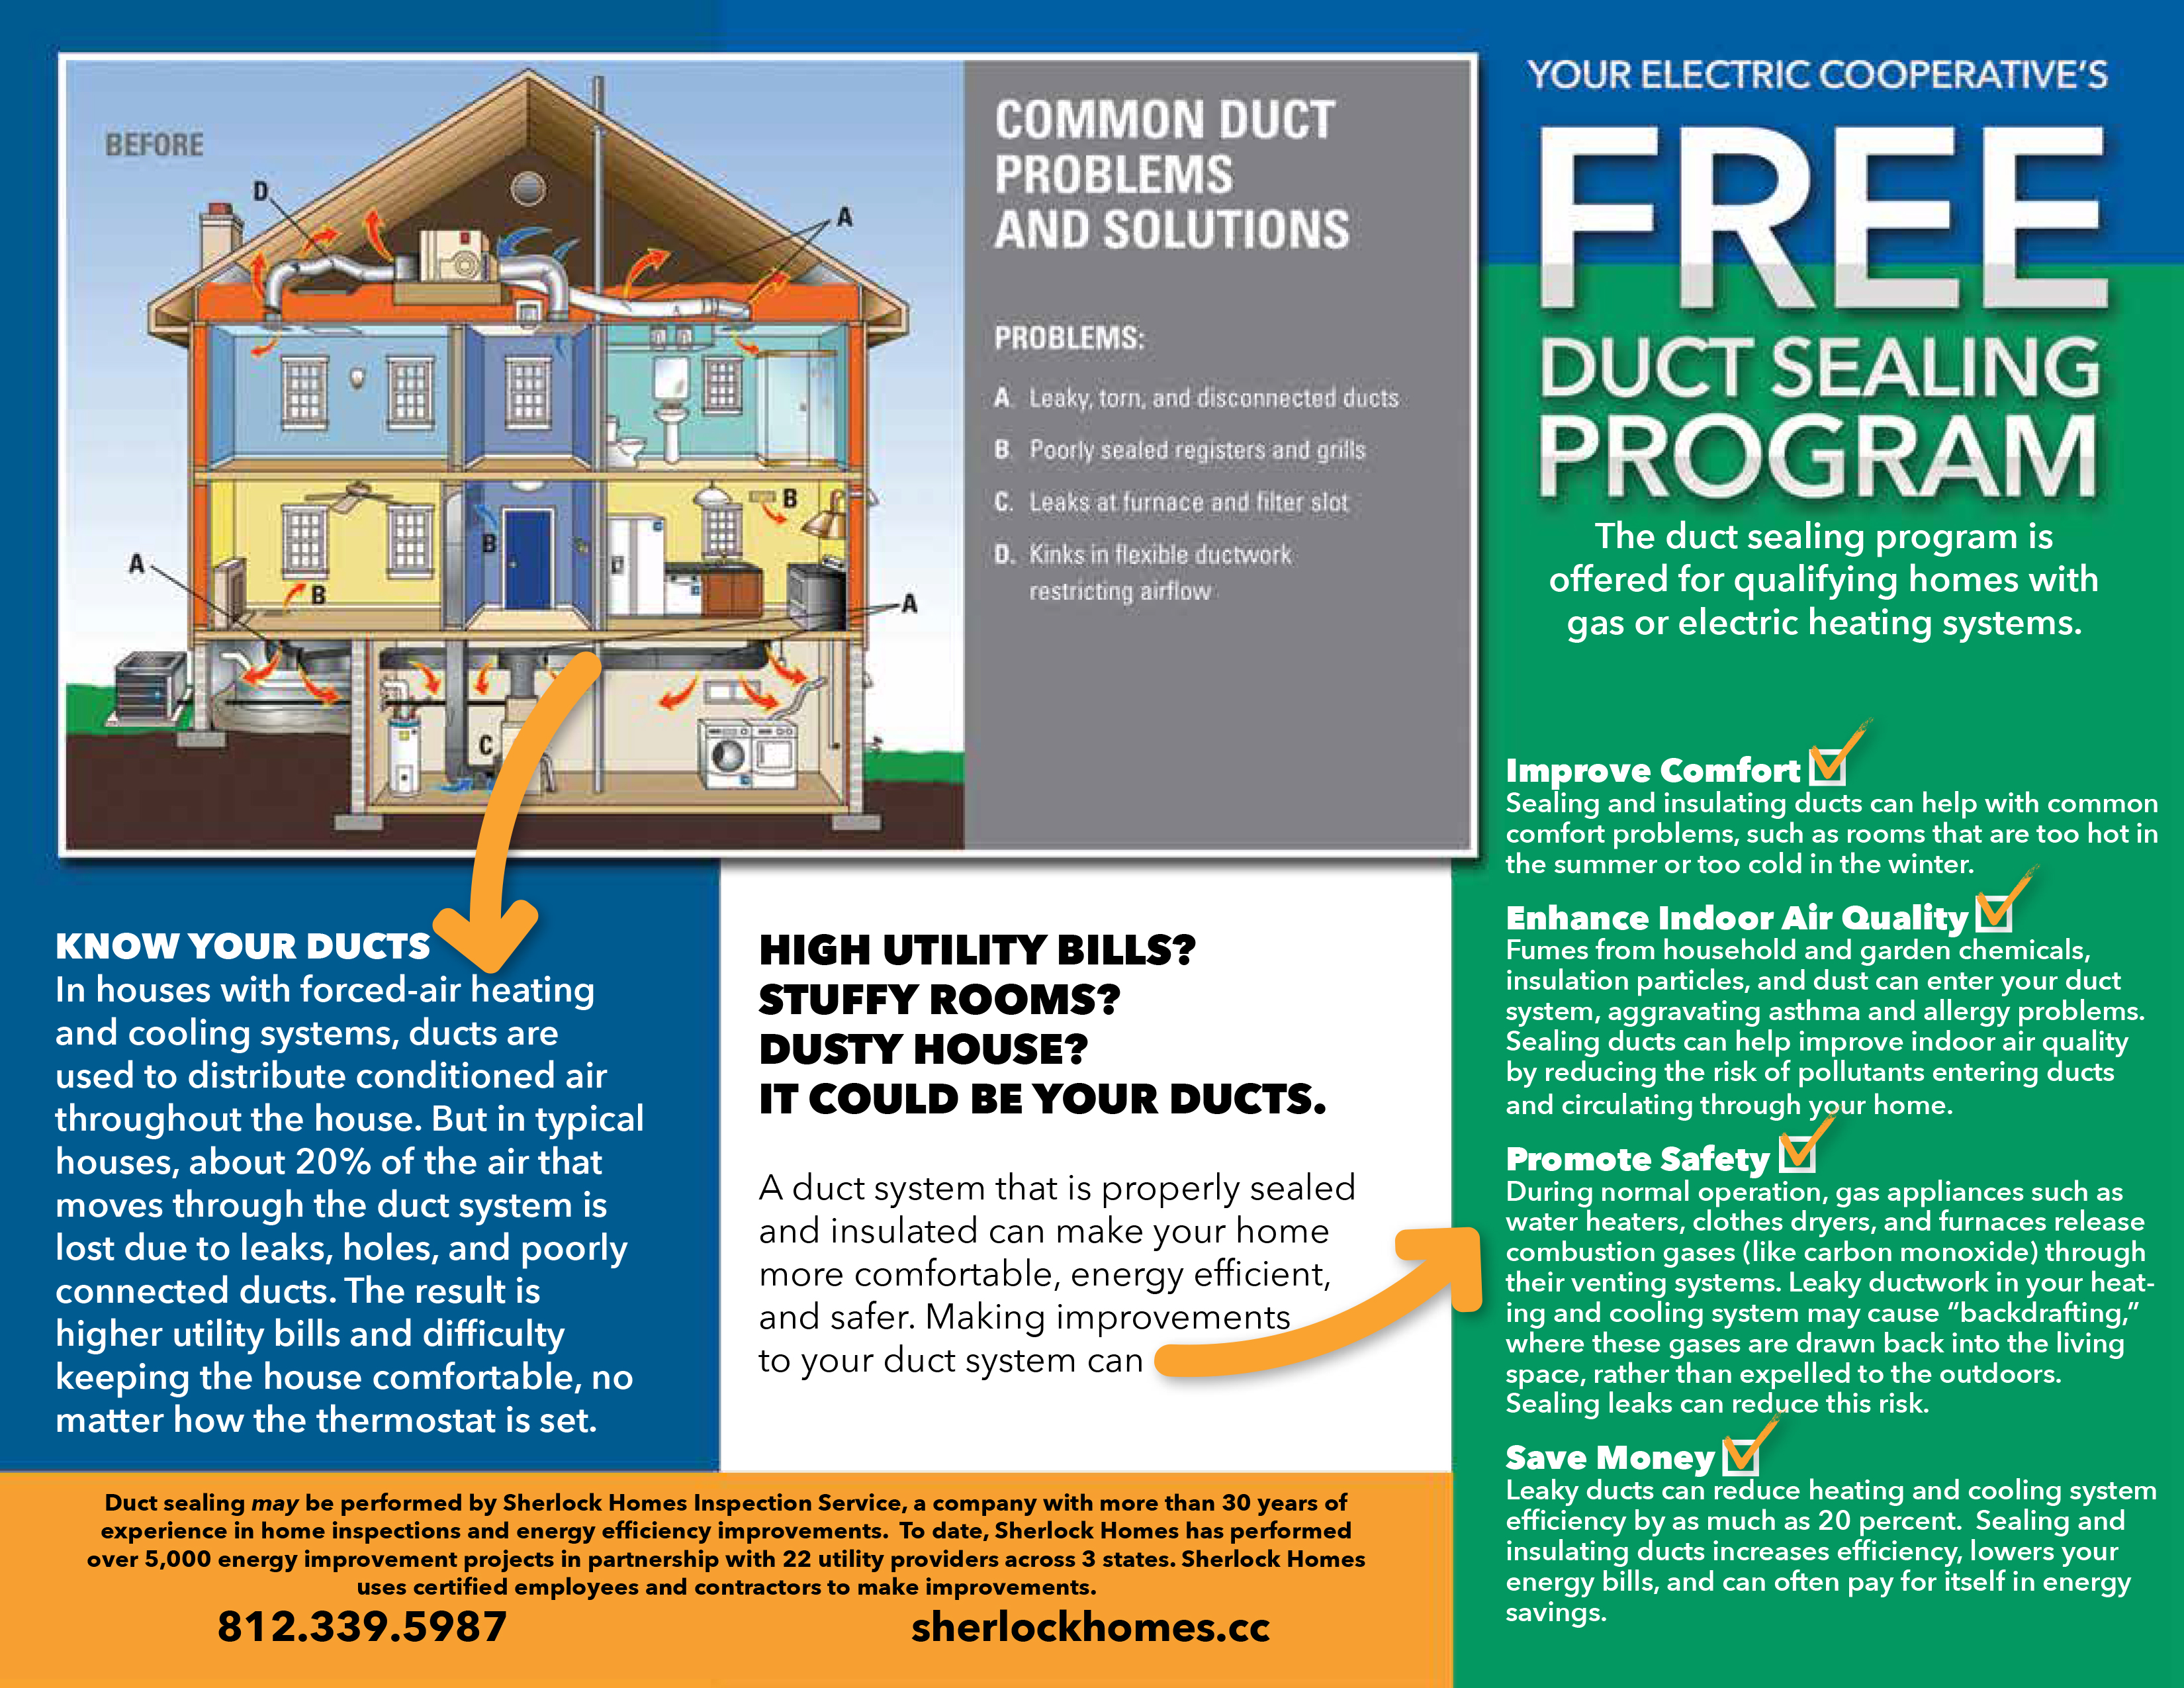 FREE Duct Sealing Rebate Program